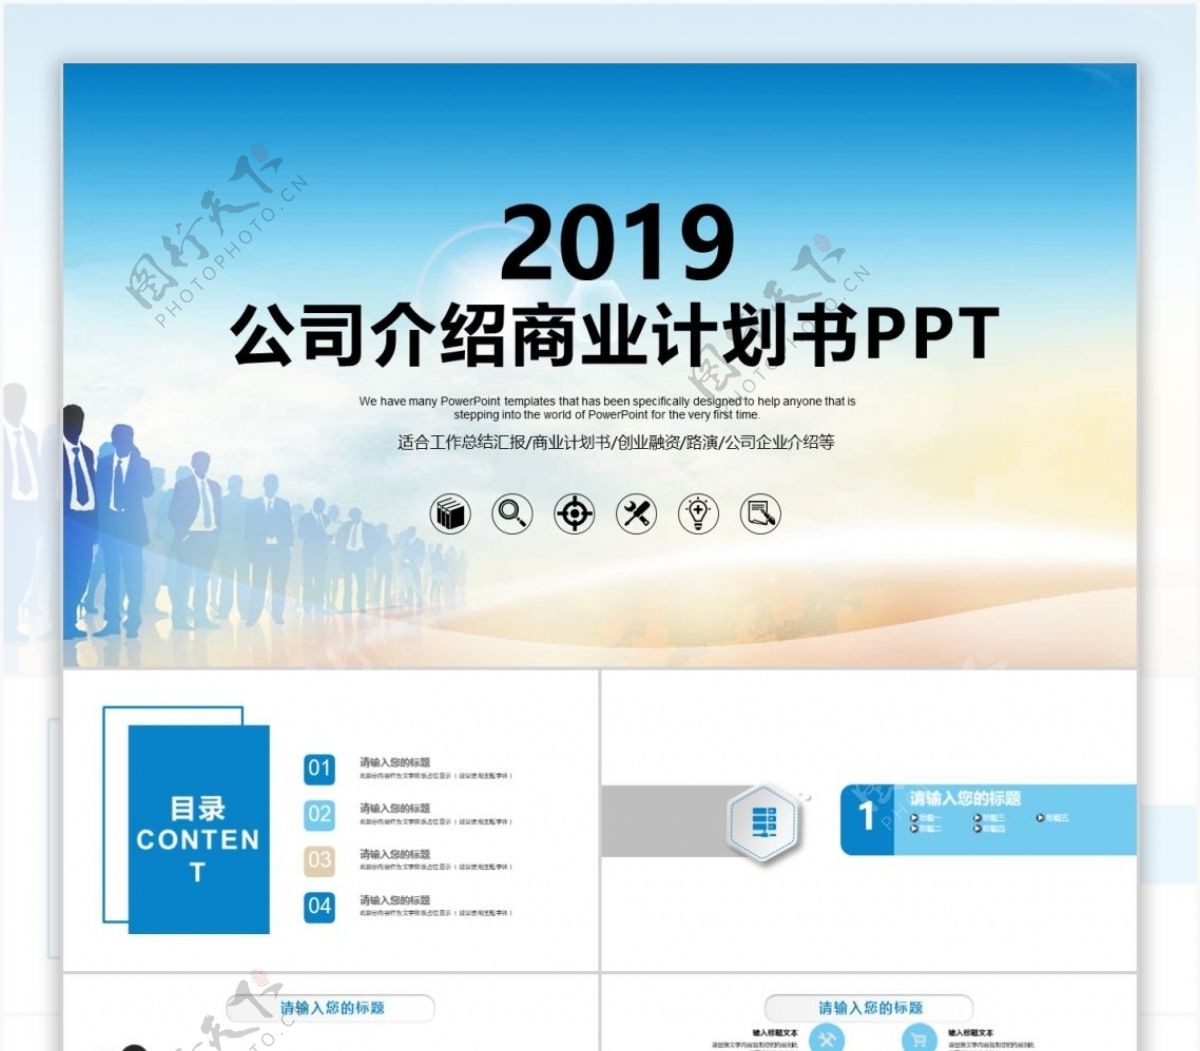 2017公司介绍商业计划书PPT模板